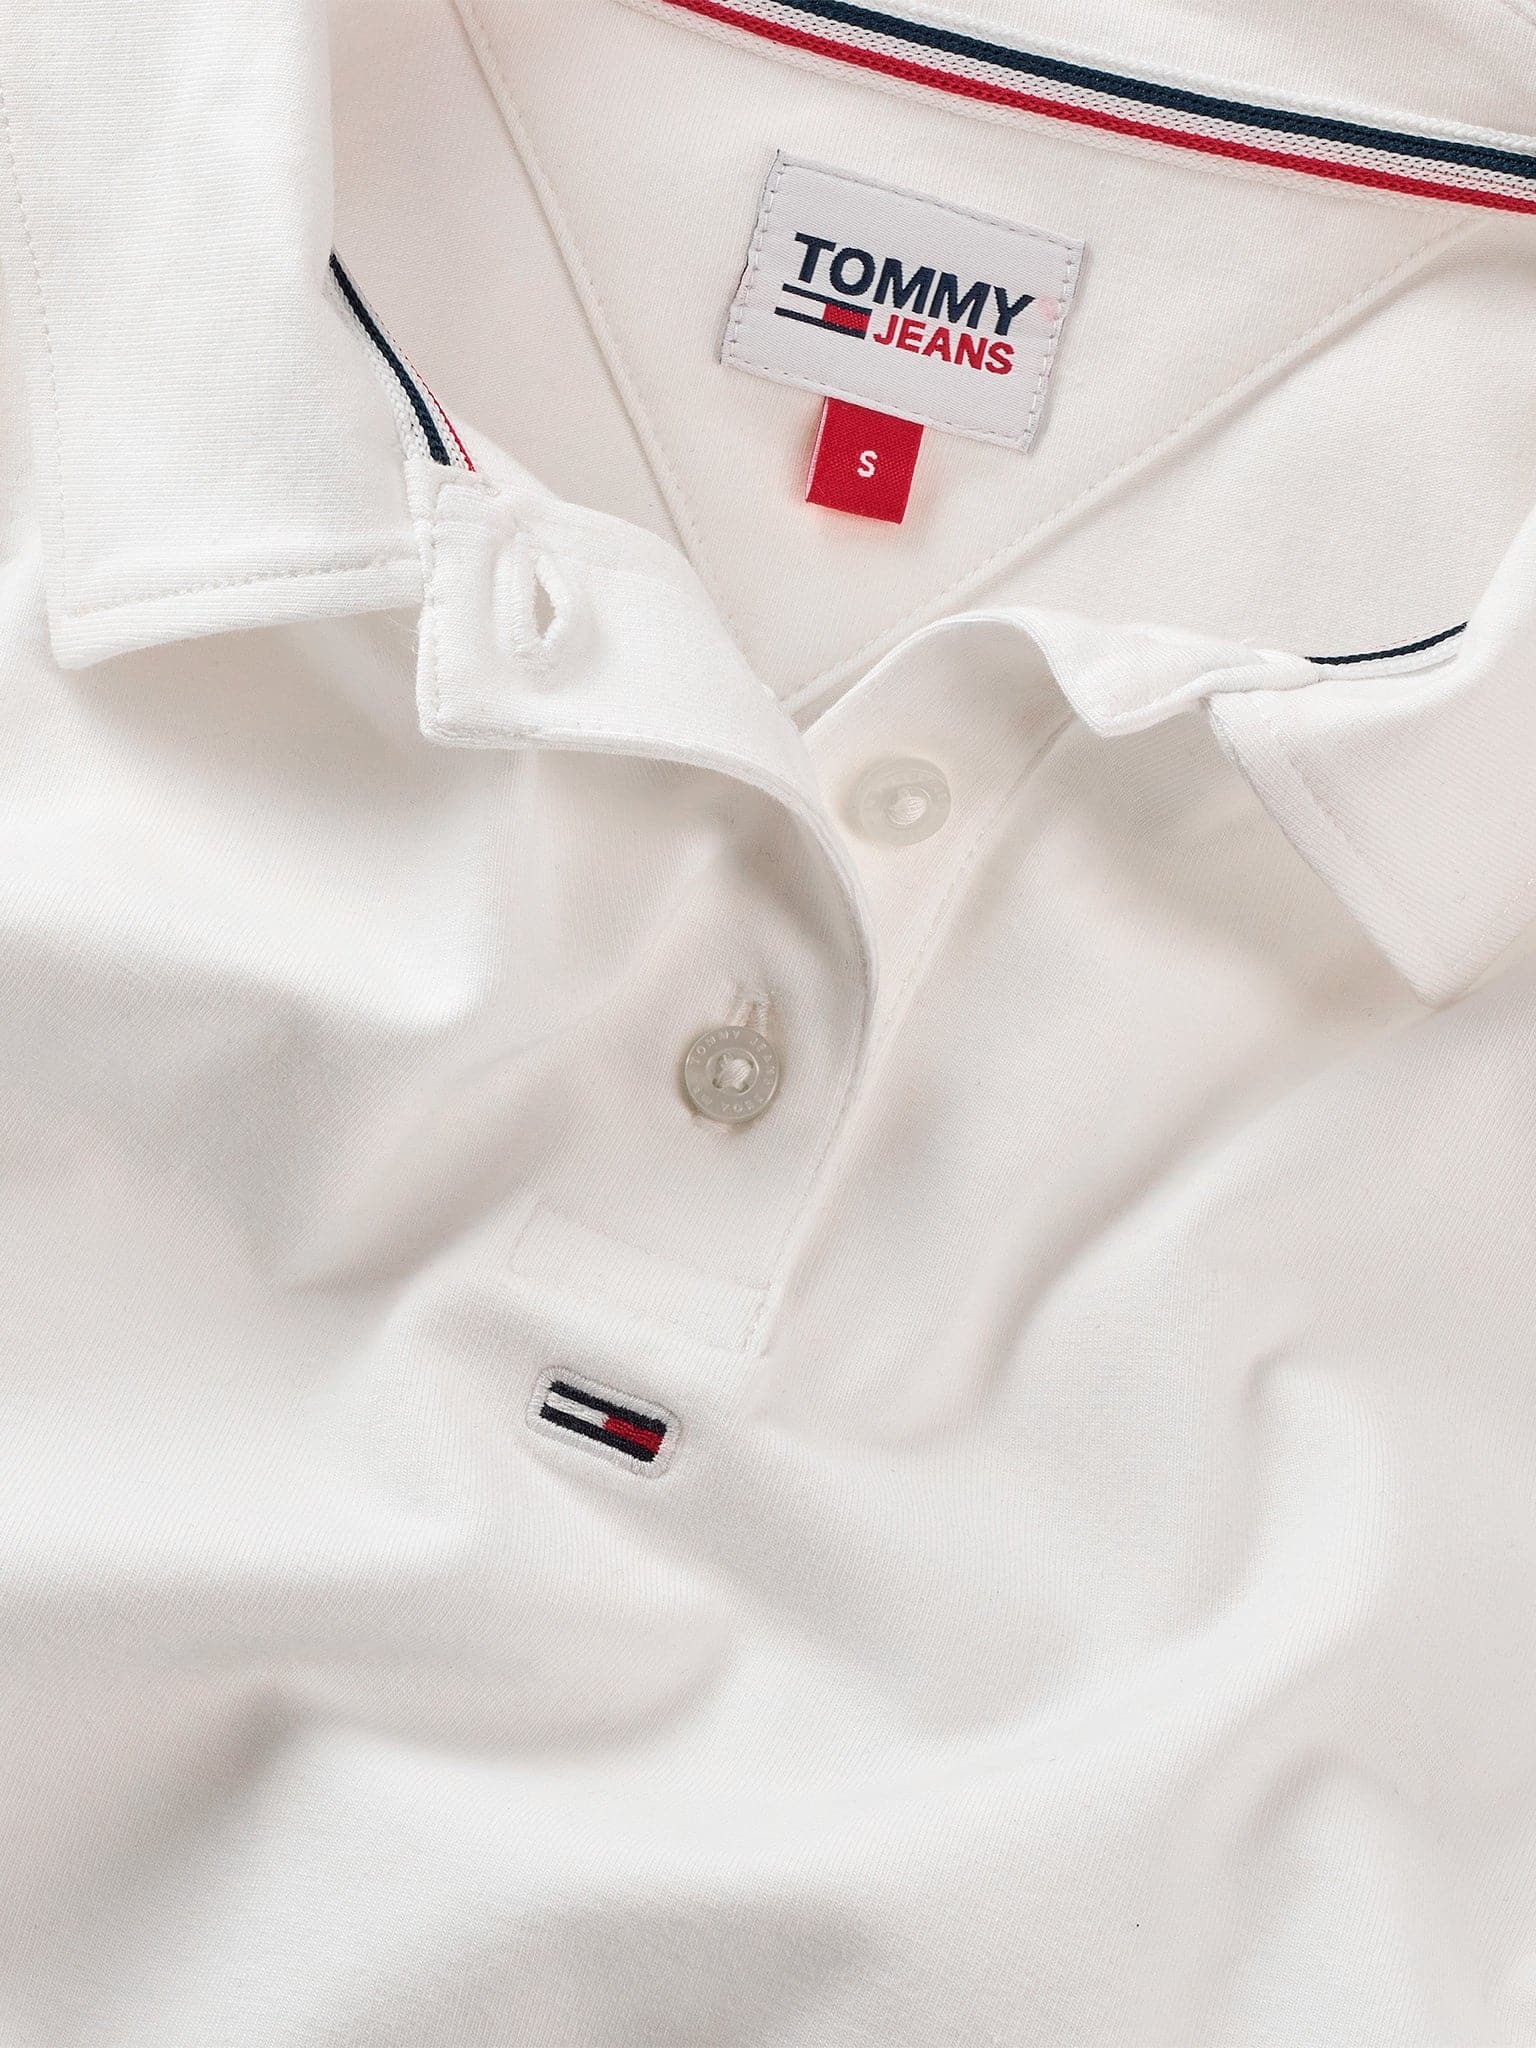 Γυναικεία polo μπλούζα κοντομάνικη  BBY Essential SS Polo Shirt DW0DW15847YBR | DW0DW15847YBR